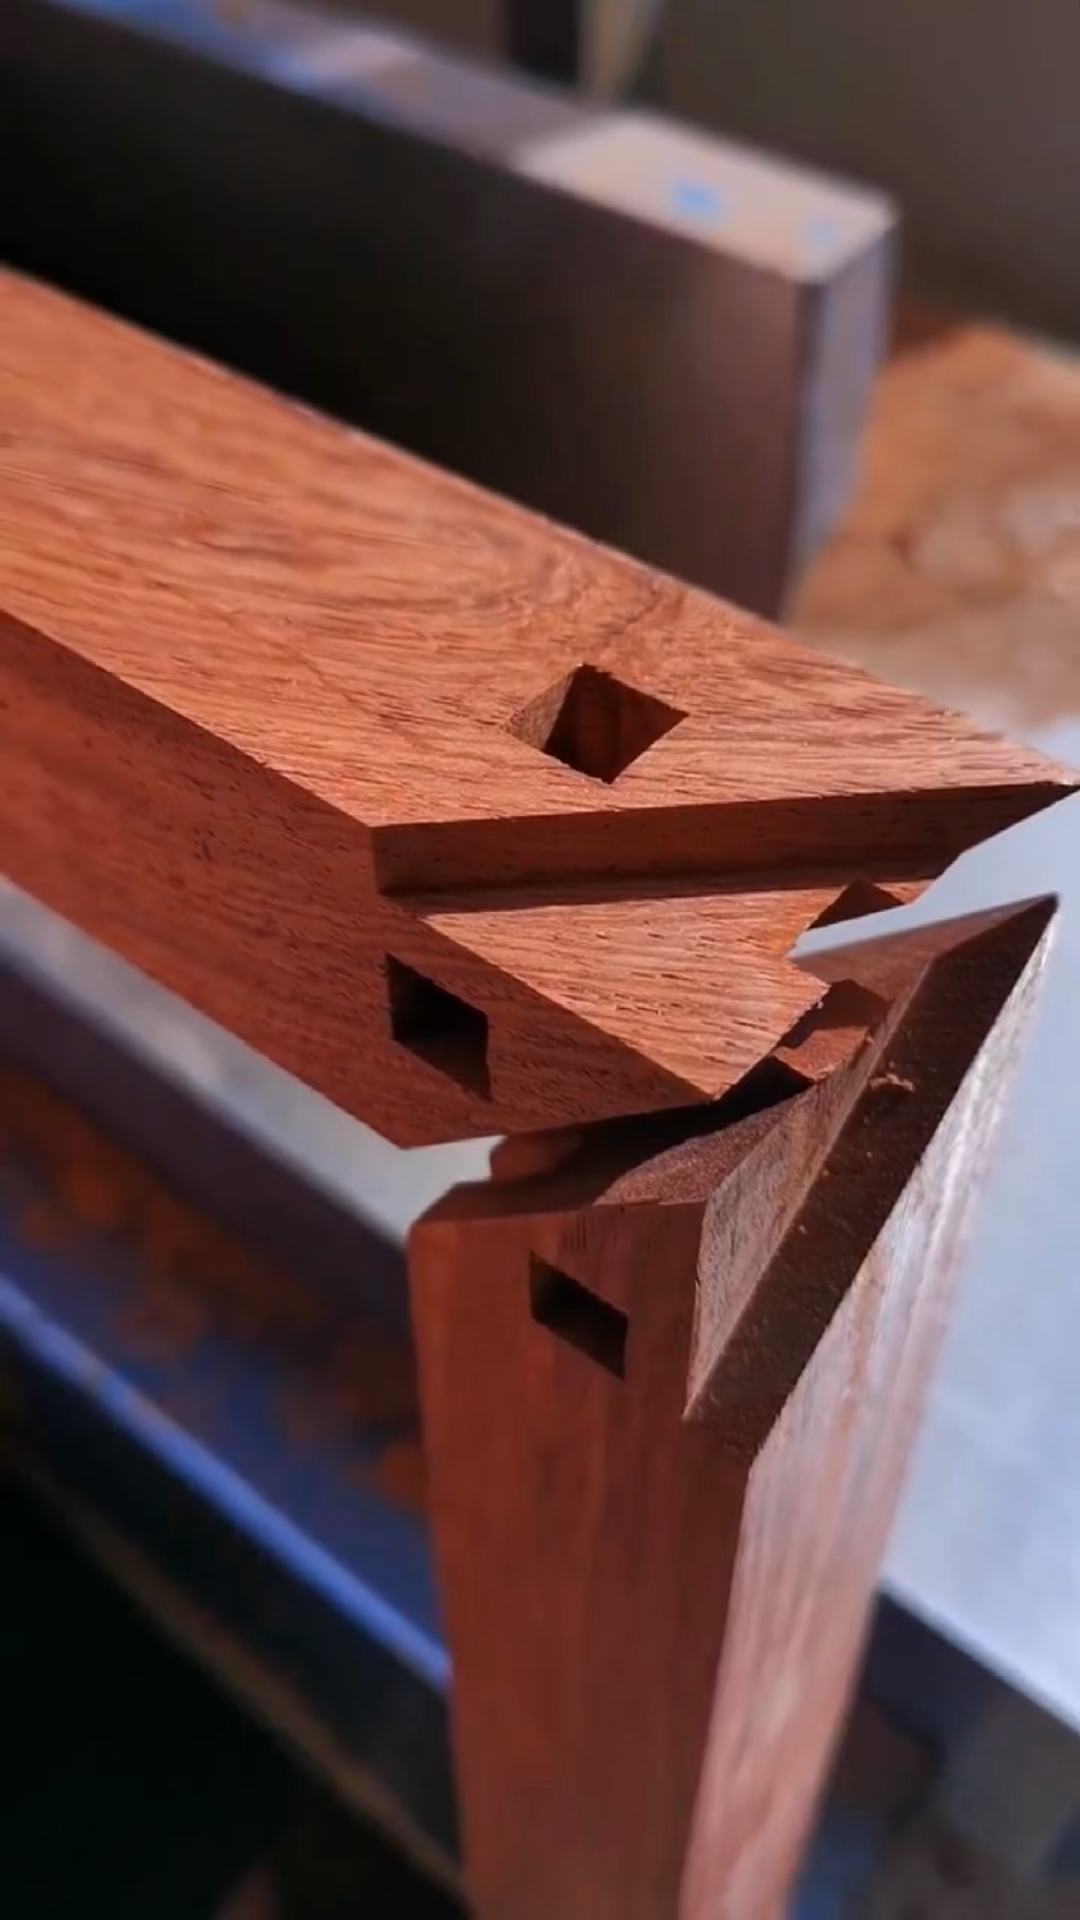 新启专项红木家具制作的精髓传统榫卯结构能让不同木材不用任何钉子